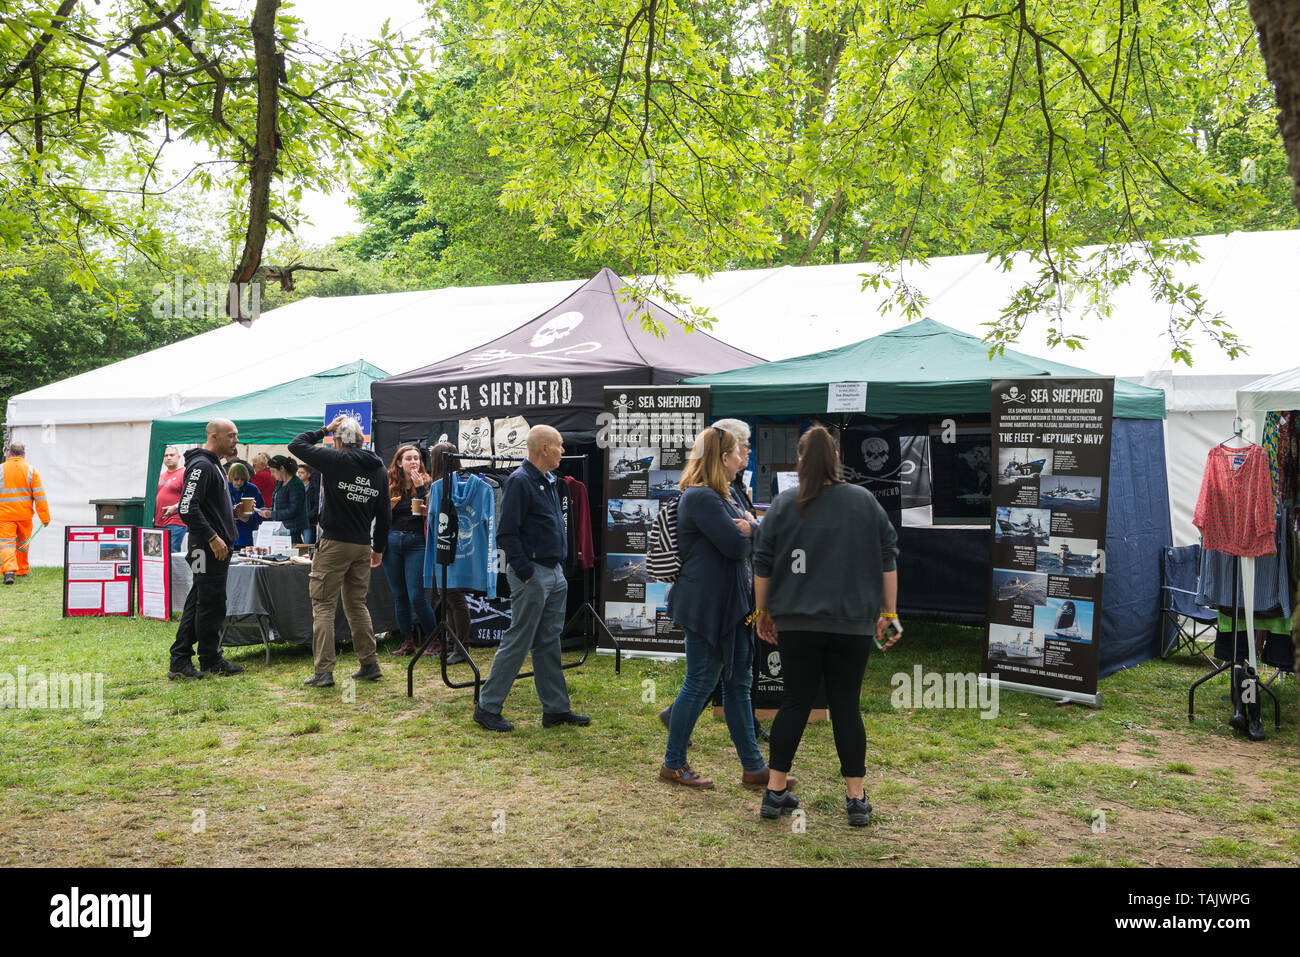 Mostra della Sea Shepherd Conservation Society al festival annuale di Rickmansworth. Rickmansworth, Hertfordshire, Inghilterra, Regno Unito Foto Stock